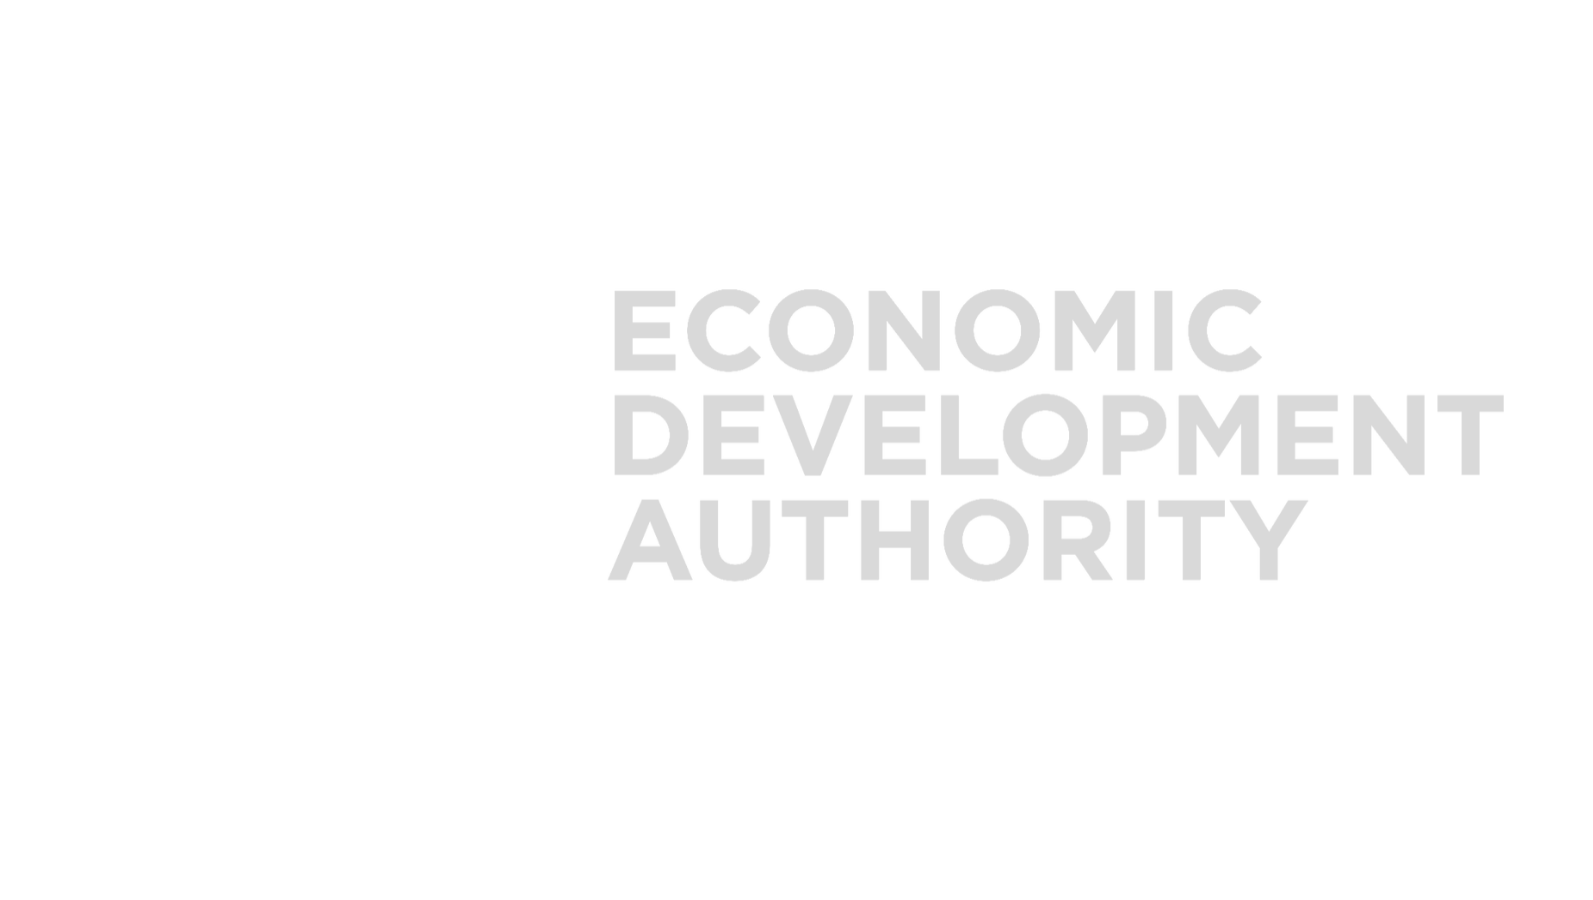 Howard Country Economic Development Authority logo